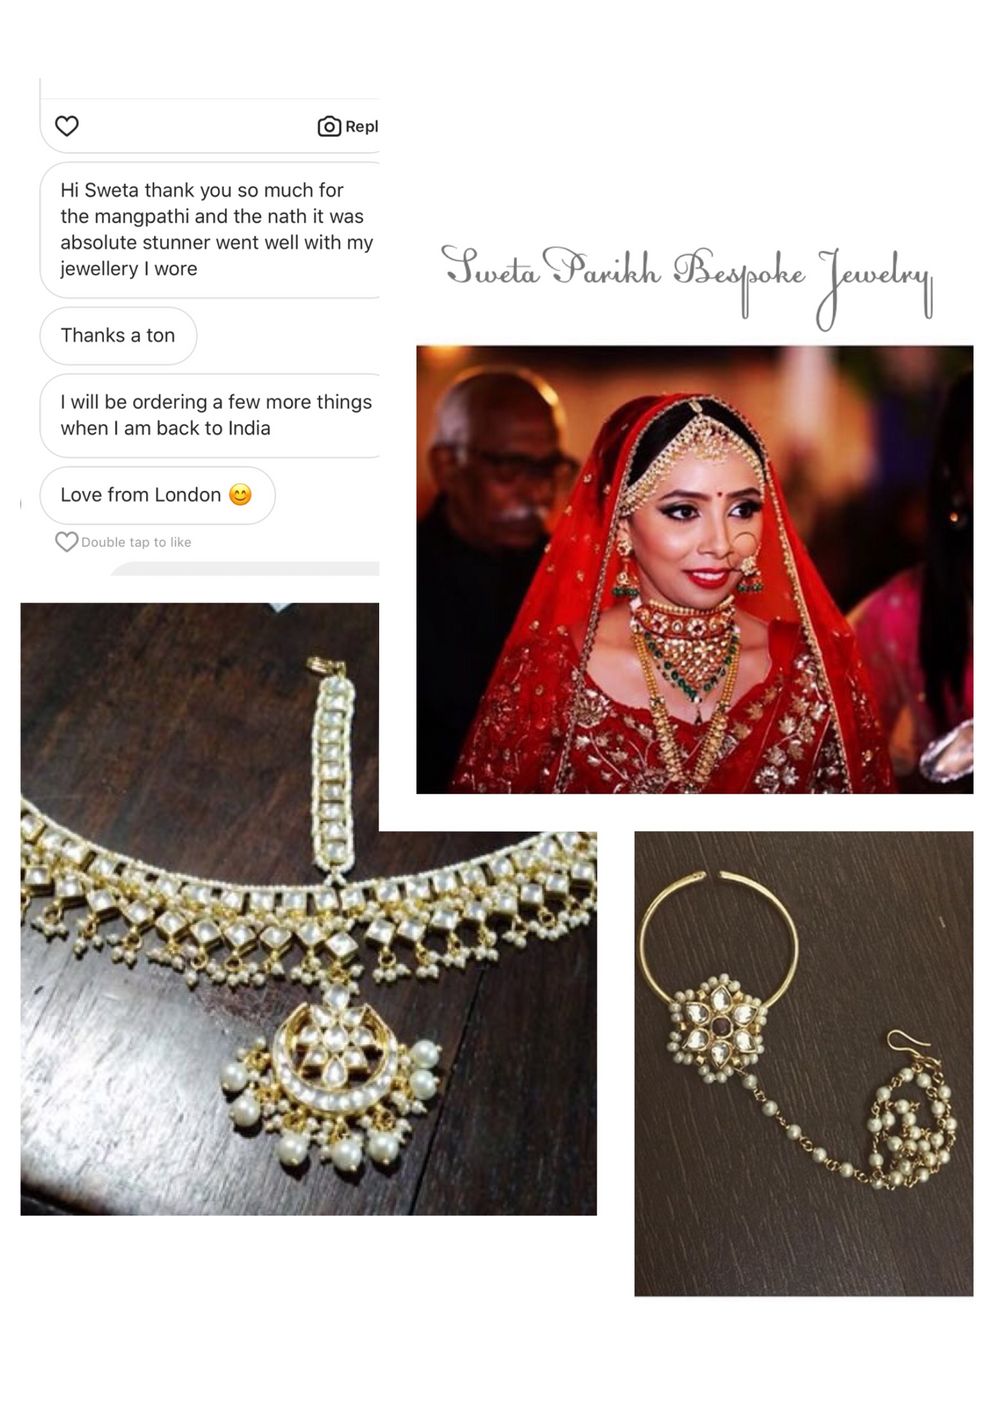 Photo From BridalDiaries - By Sweta Parikh-Bespoke Jewelry